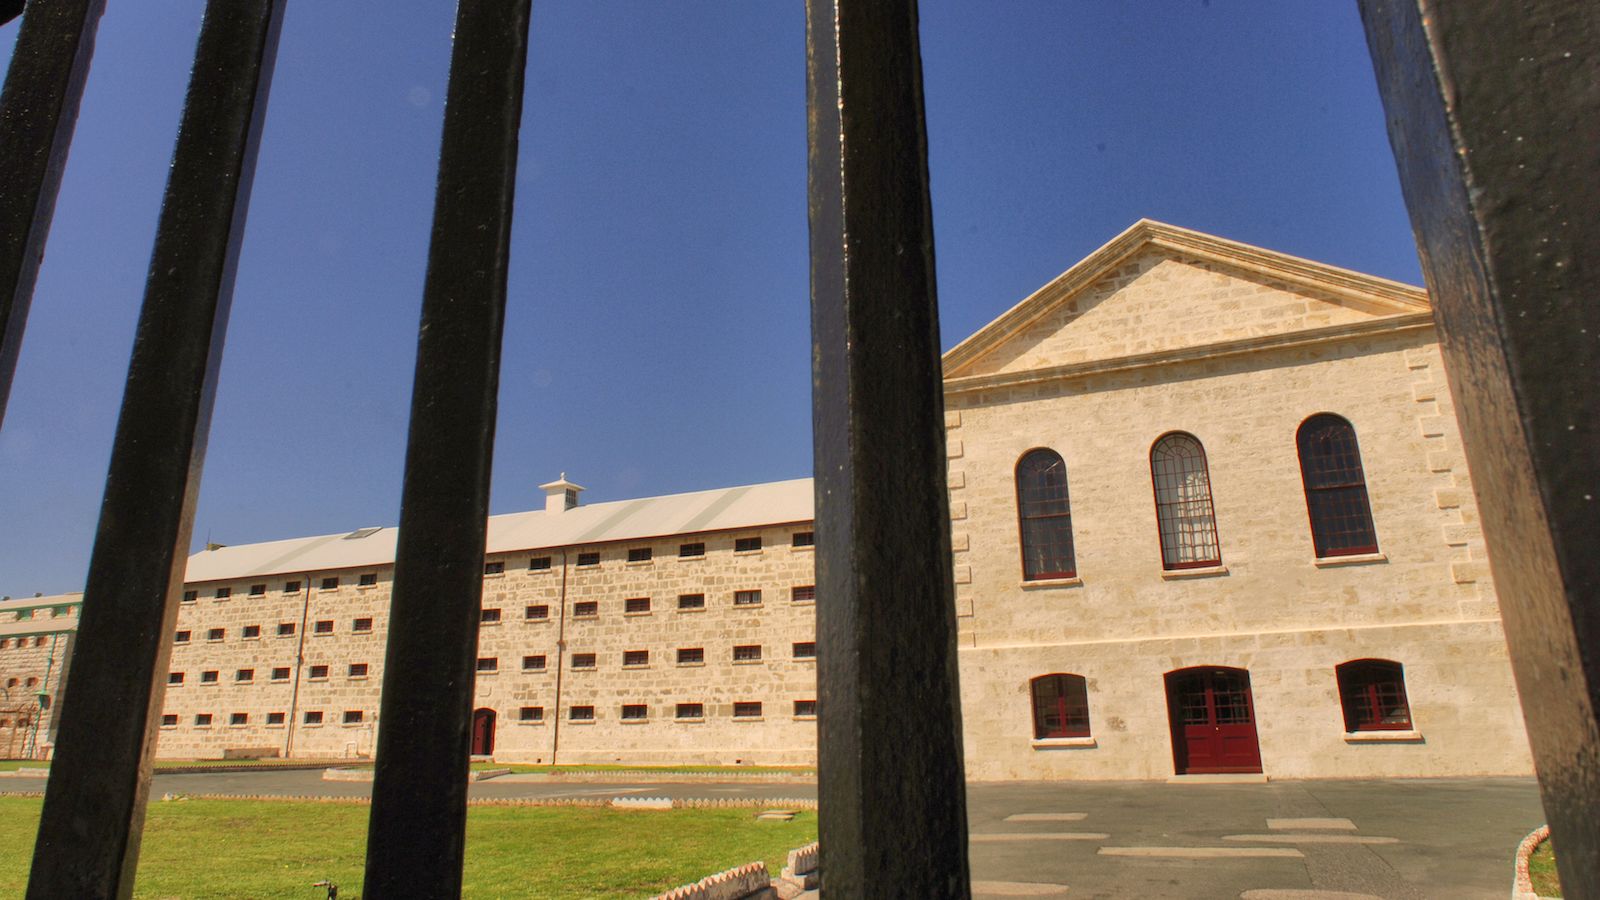 Prison Escape in Australia: The Law